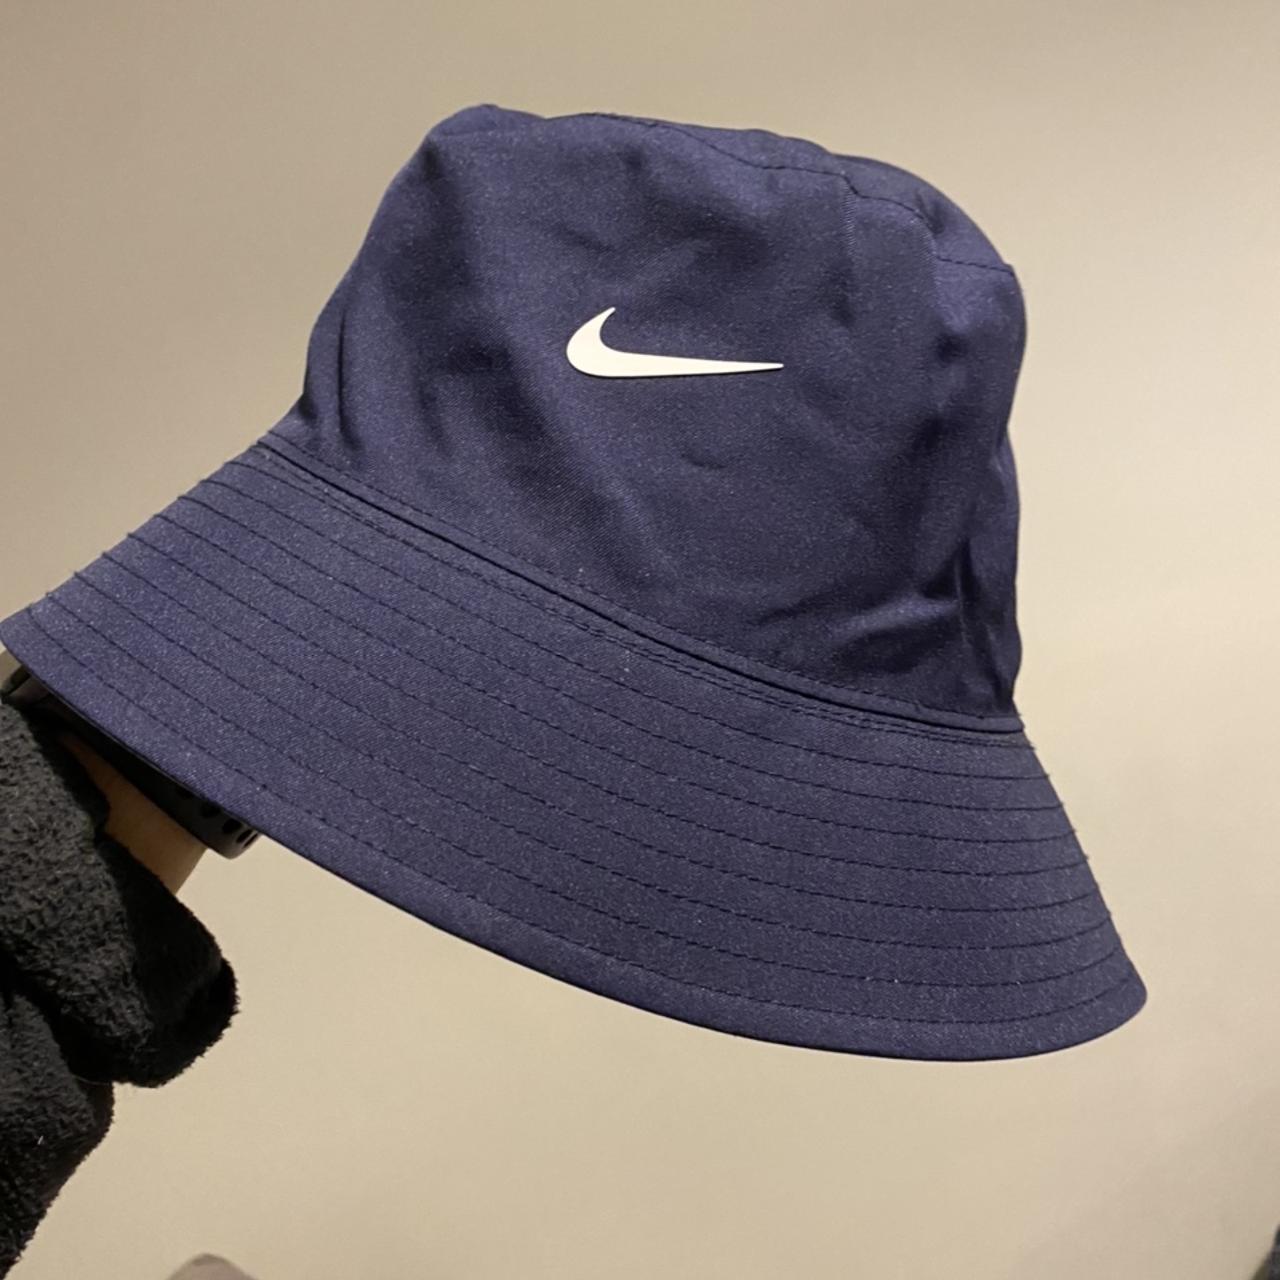 Nike x FFF Reversable light weight bucket hat Made... - Depop